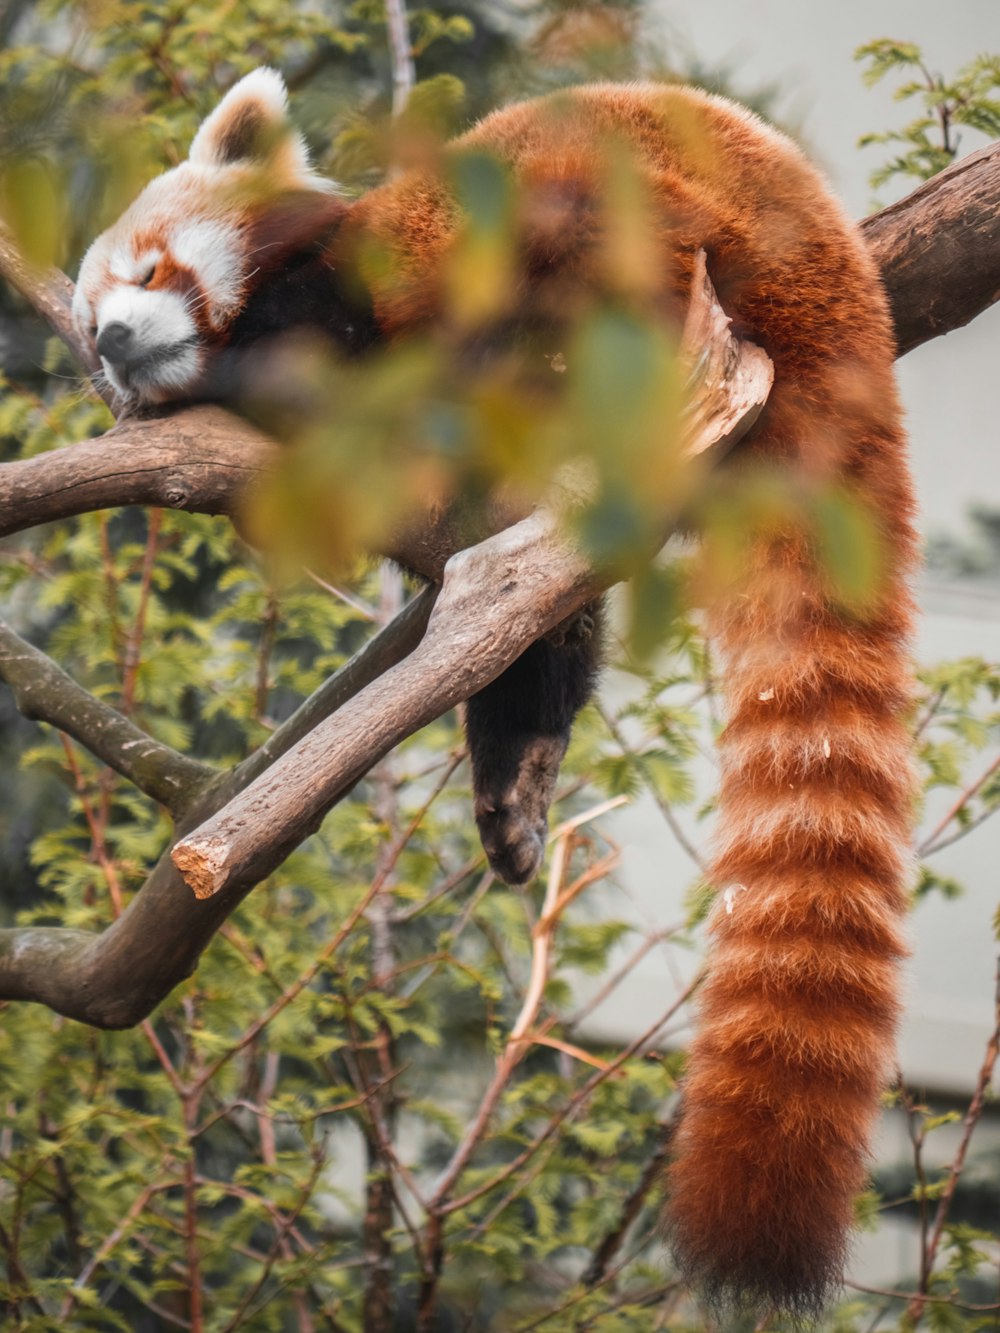 a red panda climbing a tree